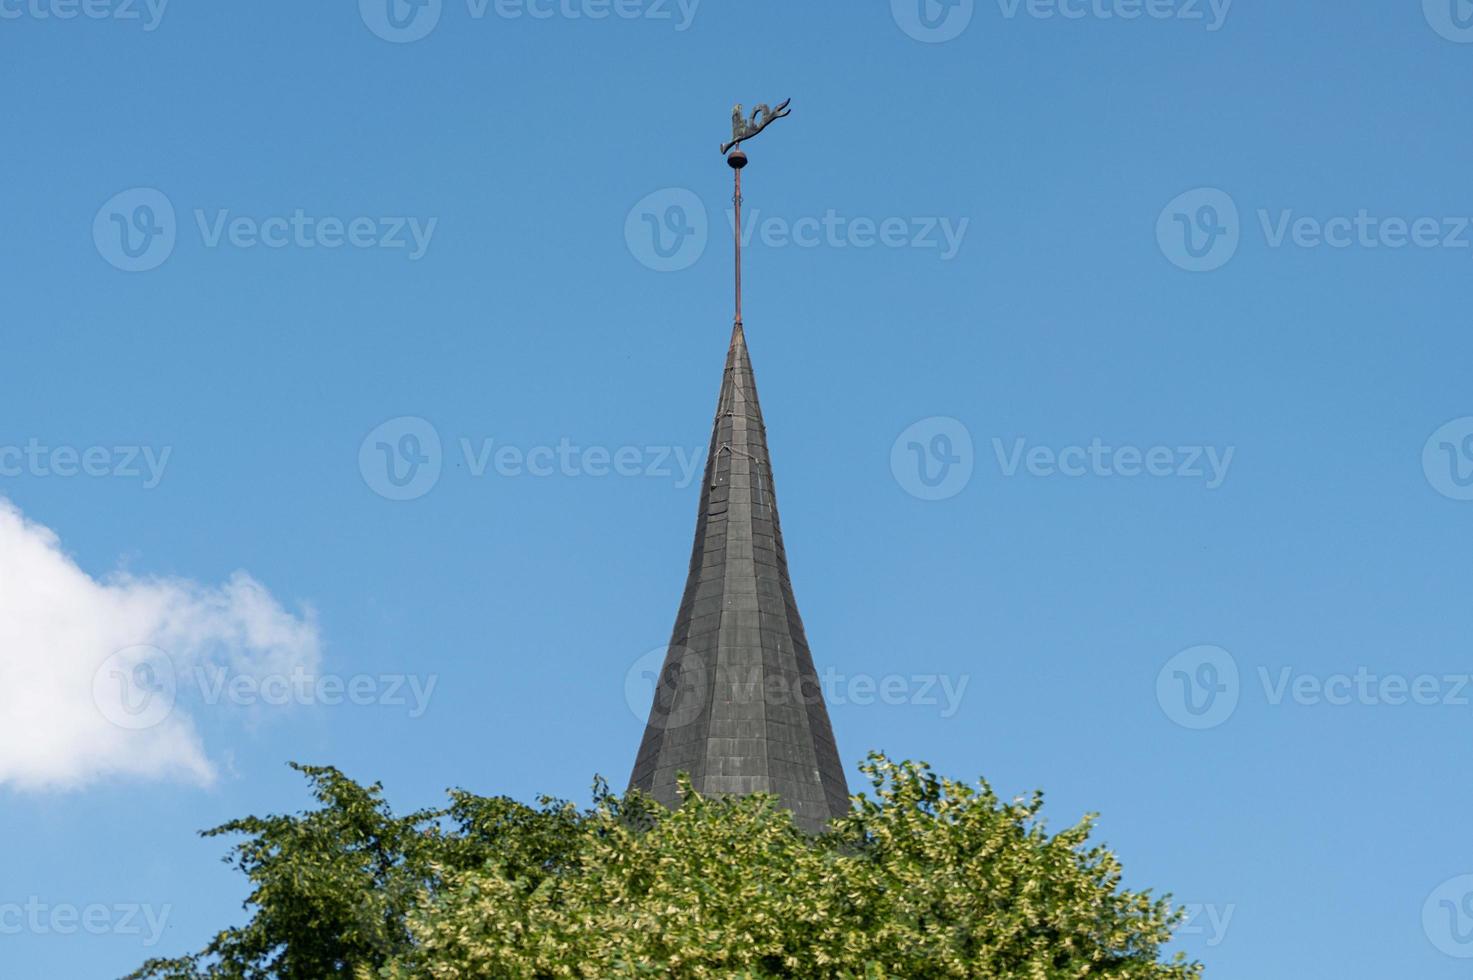 klokkentoren van de kathedraal van konigsberg. baksteen gotisch-stijl monument in kaliningrad, rusland. immanuel kant eiland. foto